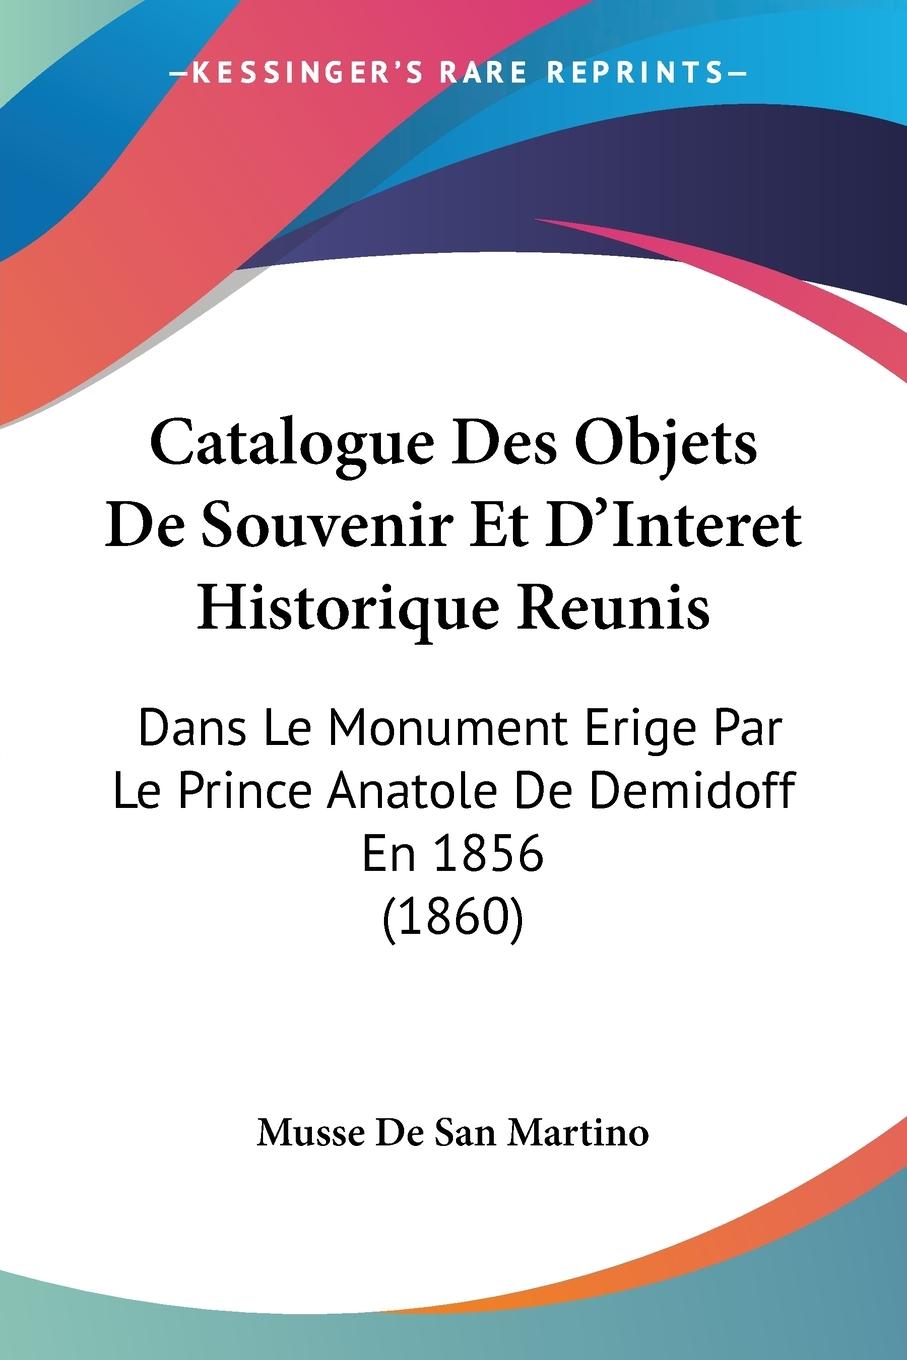 Catalogue Des Objets De Souvenir Et D Interet Historique Reunis - Musse De San Martino